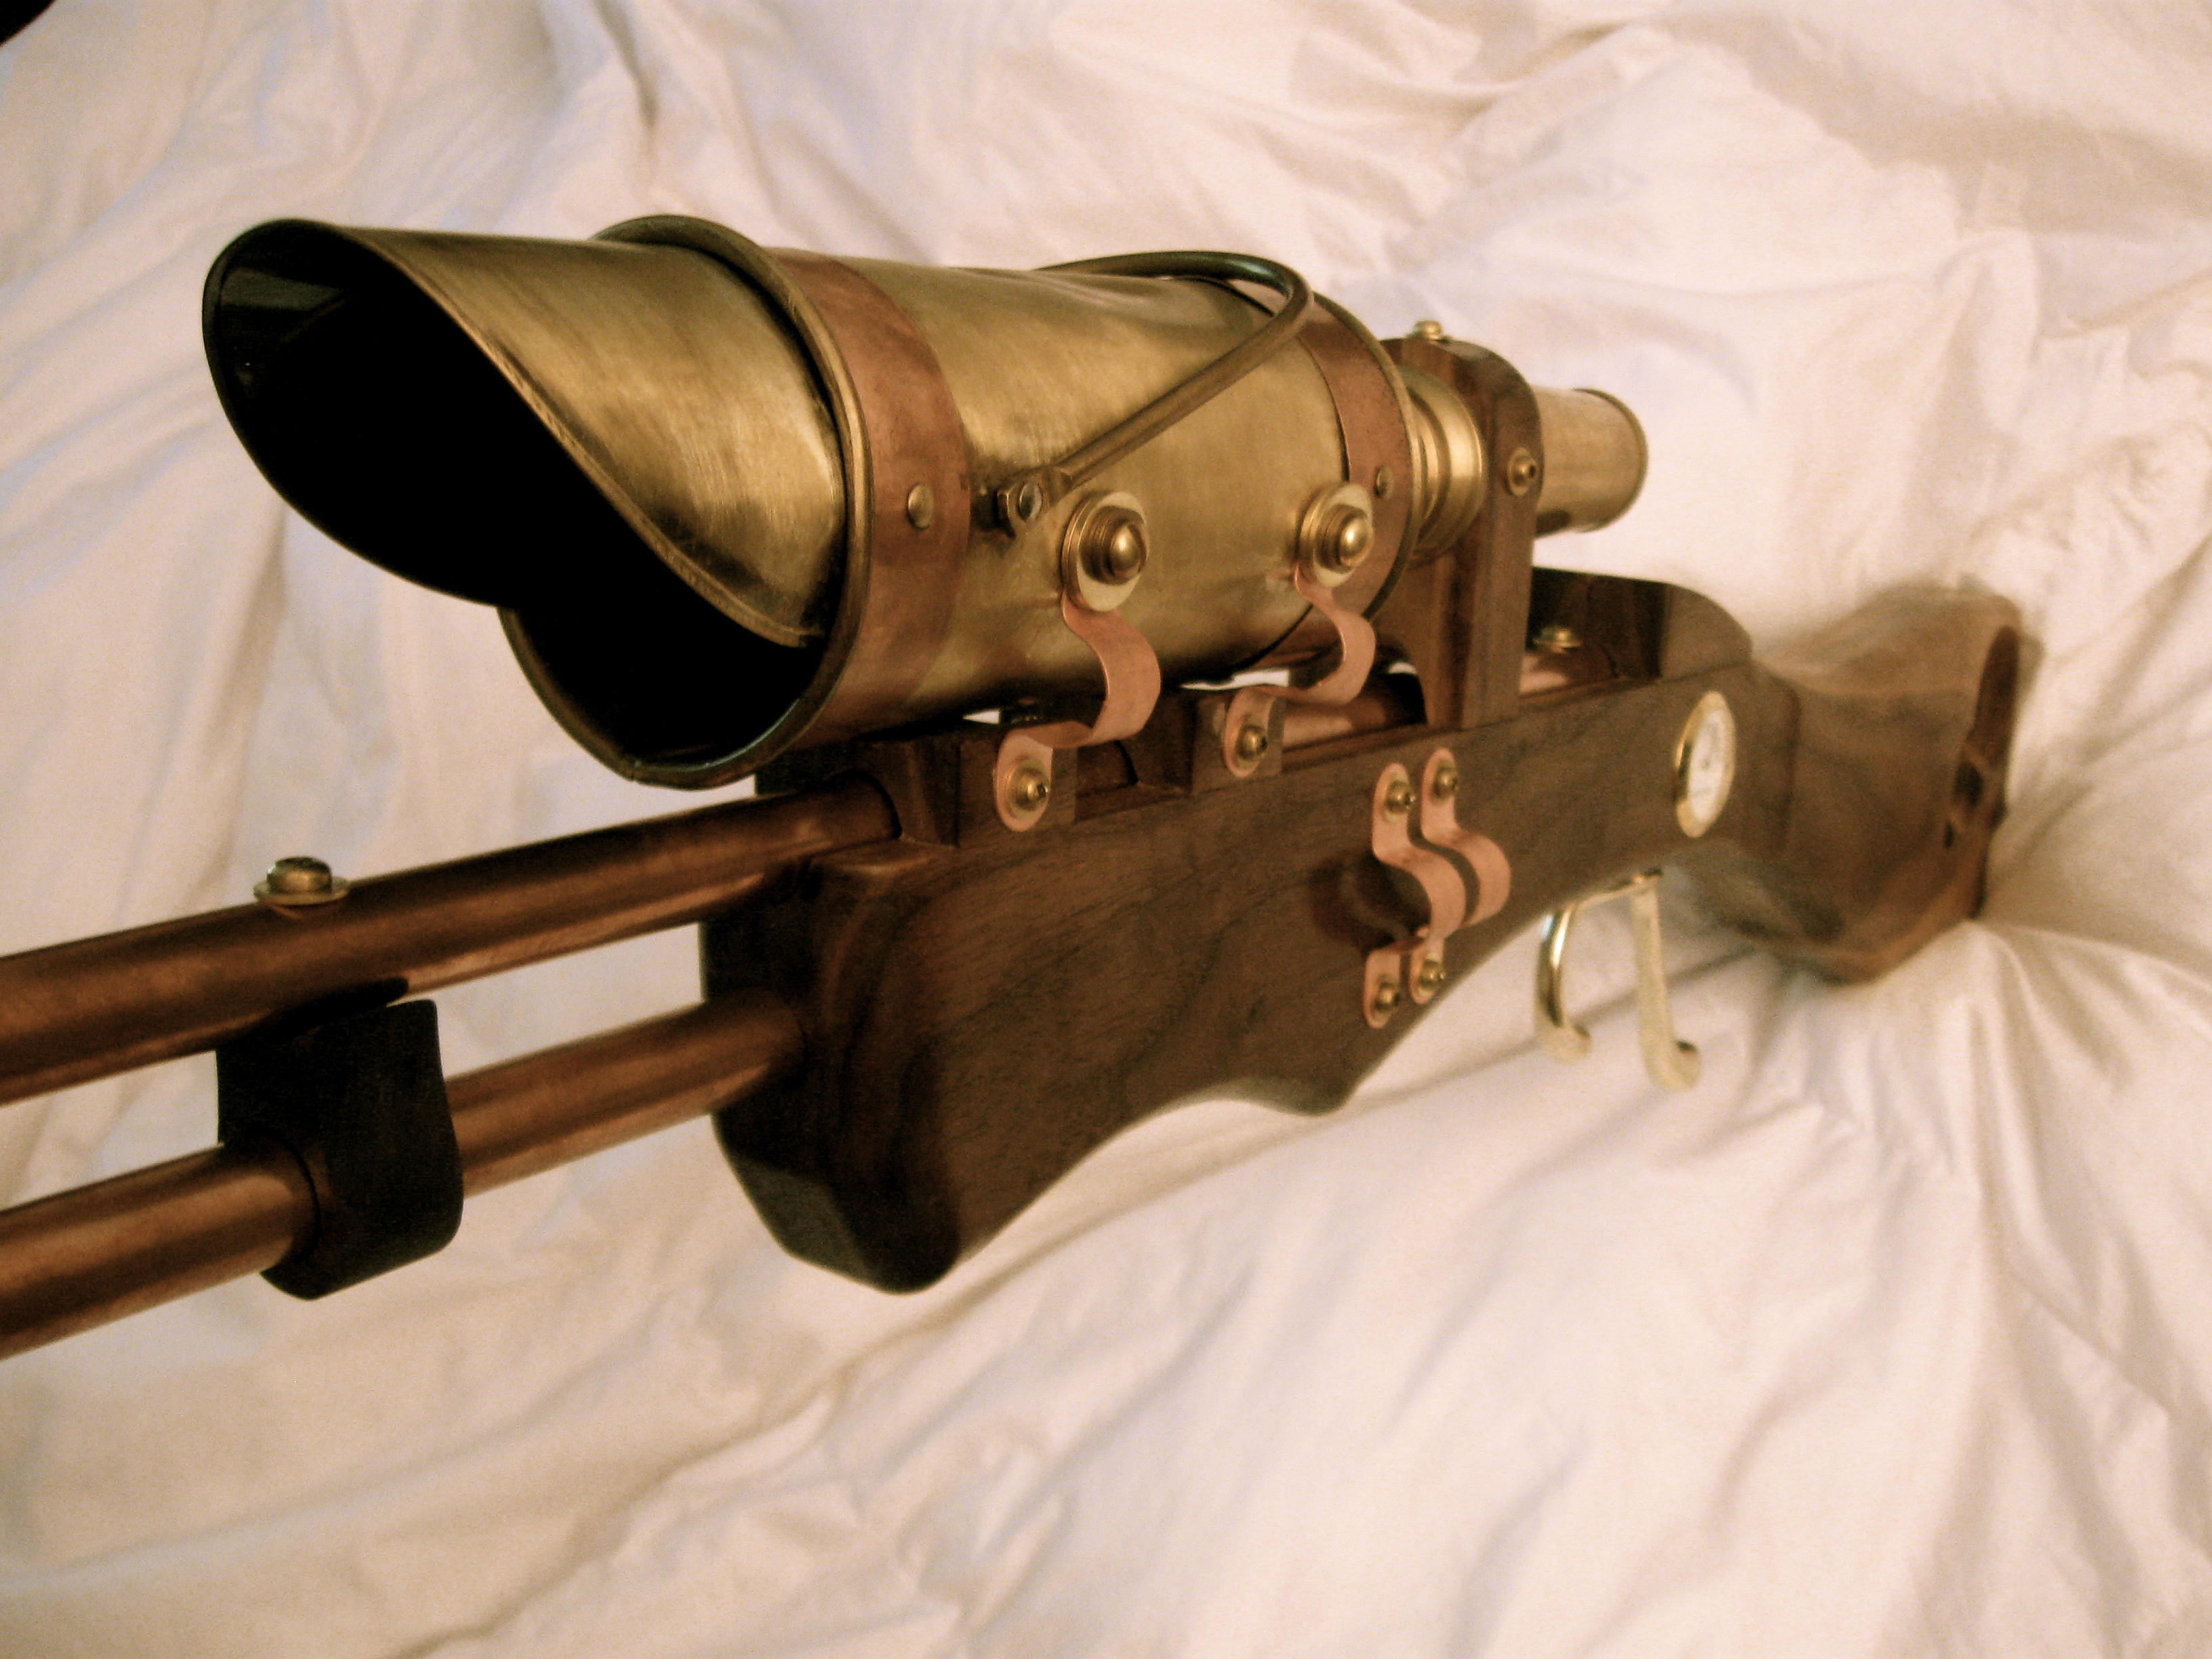 Kyle Miller's steampunk gun and gunsight